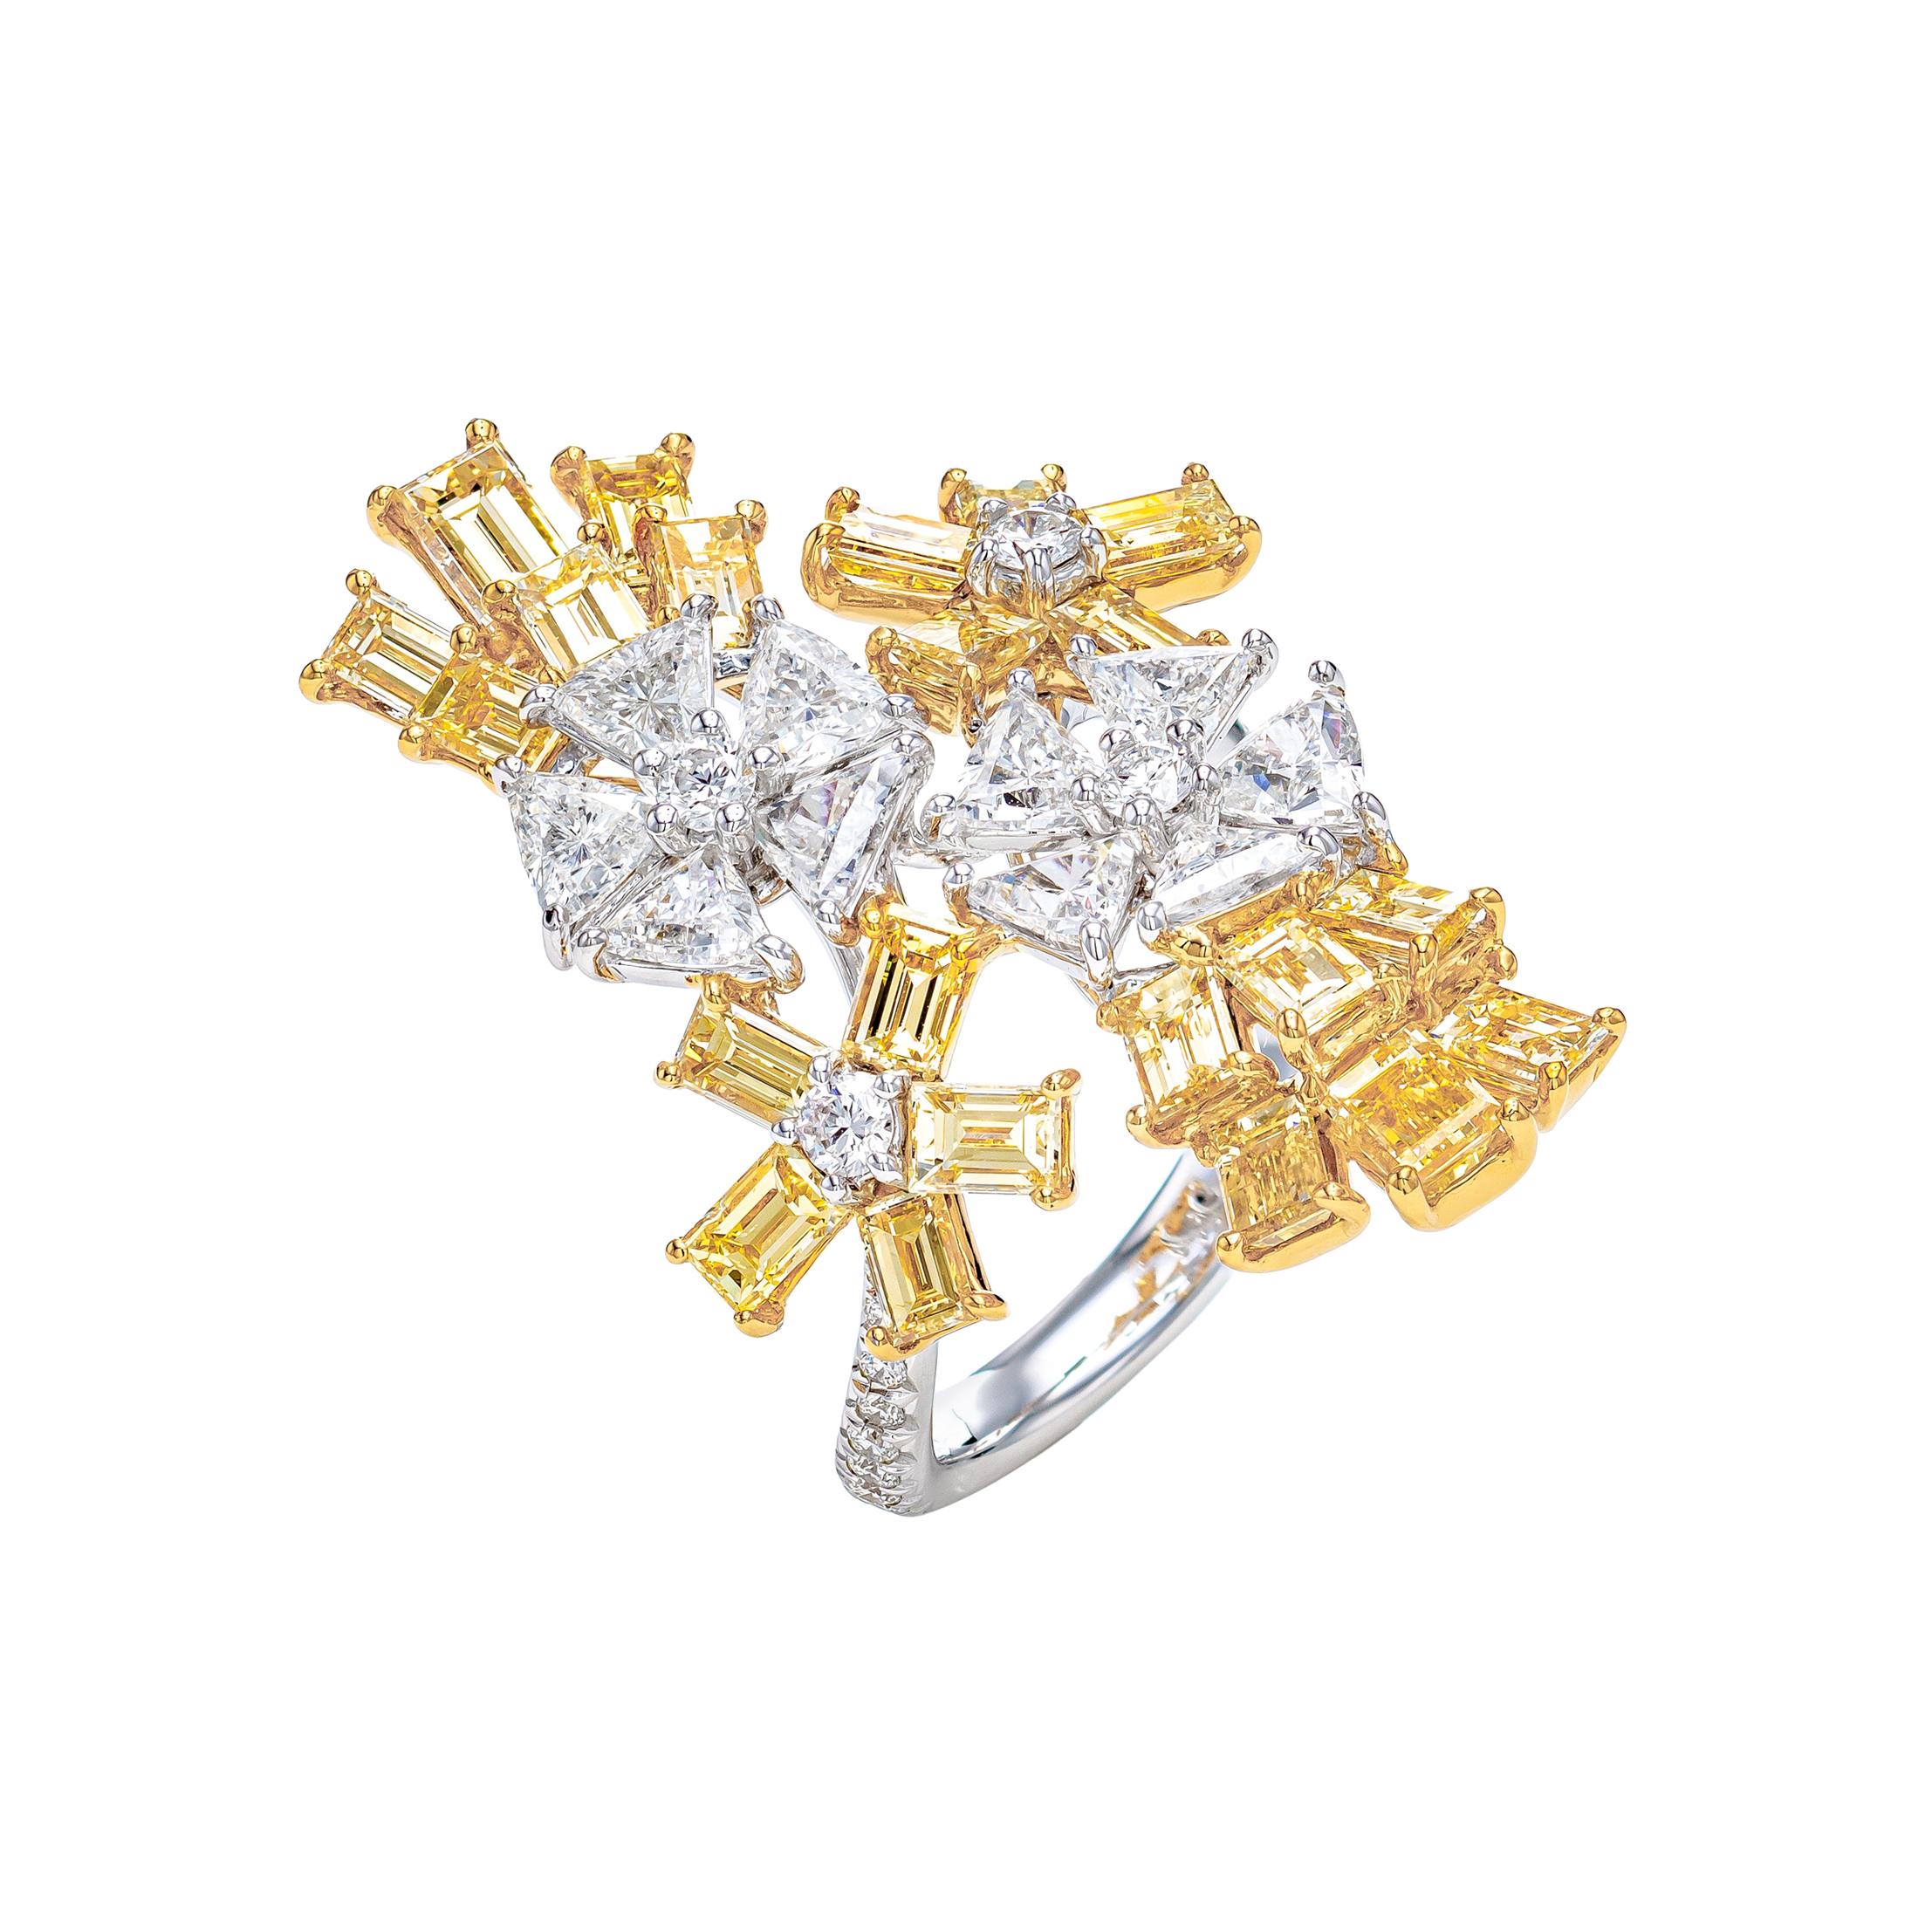 Bague enveloppante à fleurs fantaisie en or 18 carats avec diamants jaunes et blancs de 5,39 carats